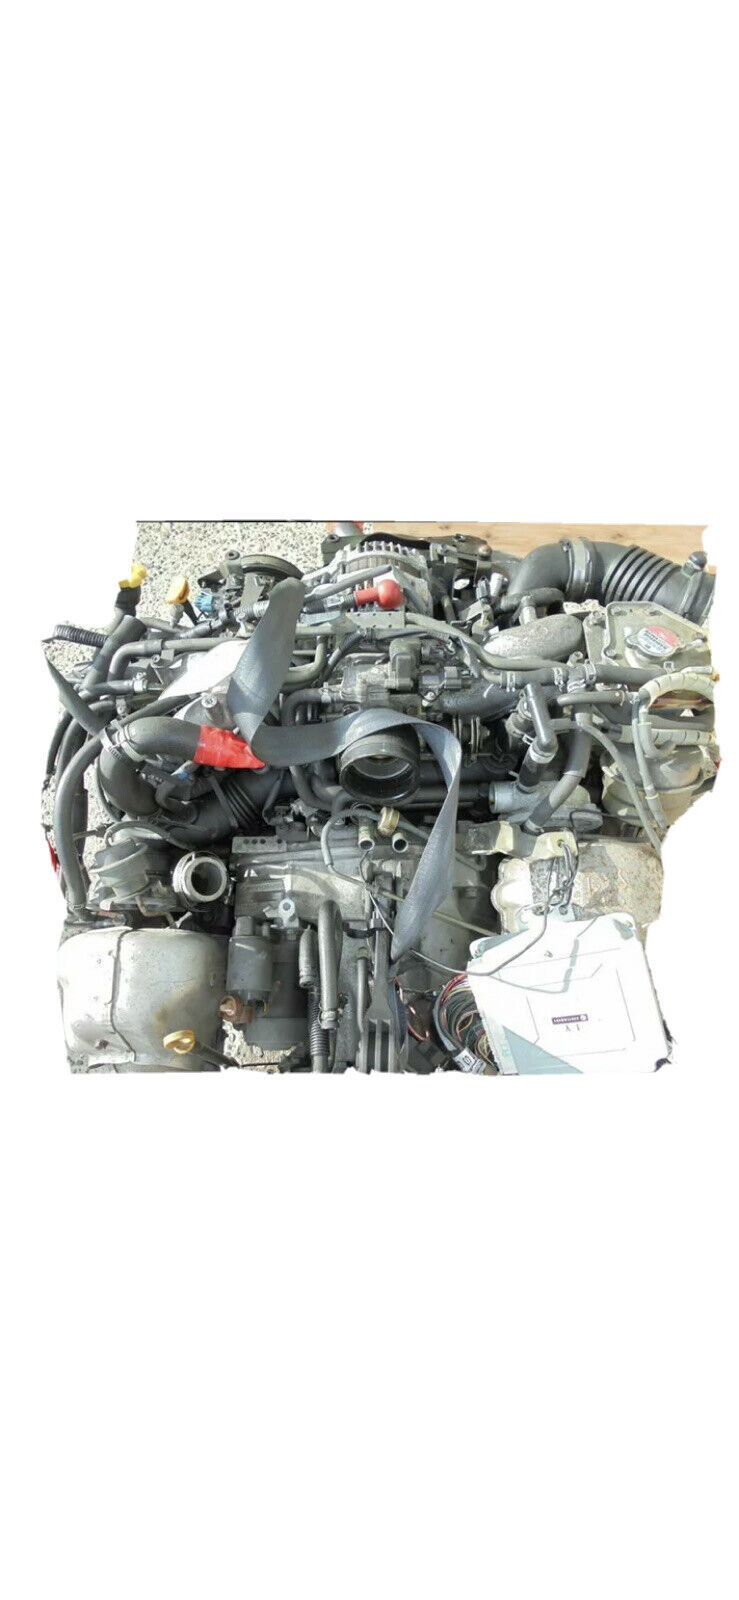 Ej208 Twin Turbo Engine